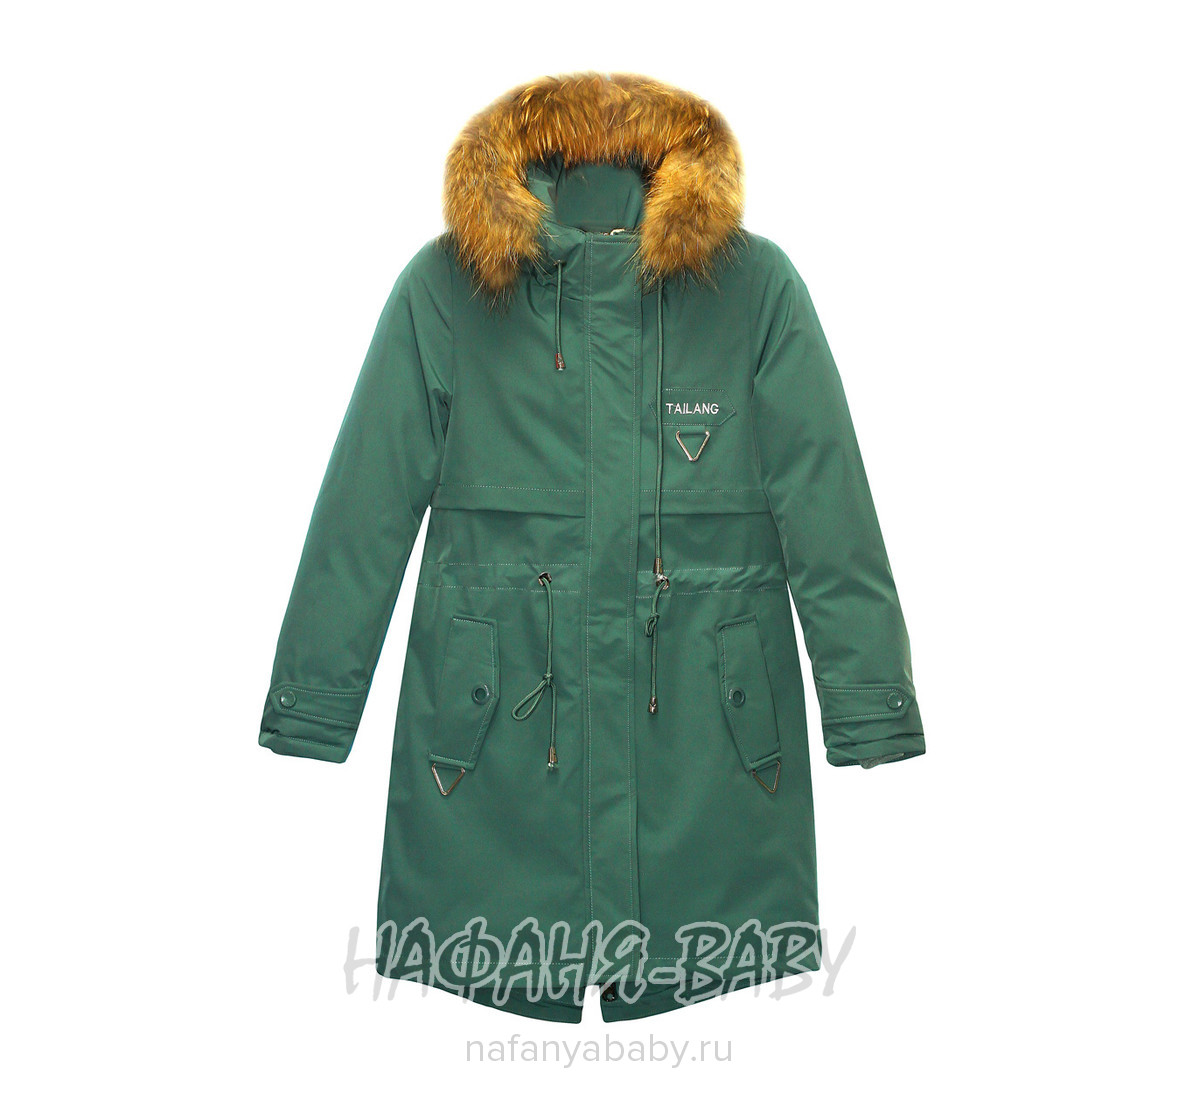 Подростковое зимнее пальто-парка TAILANG, купить в интернет магазине Нафаня. арт: 617.